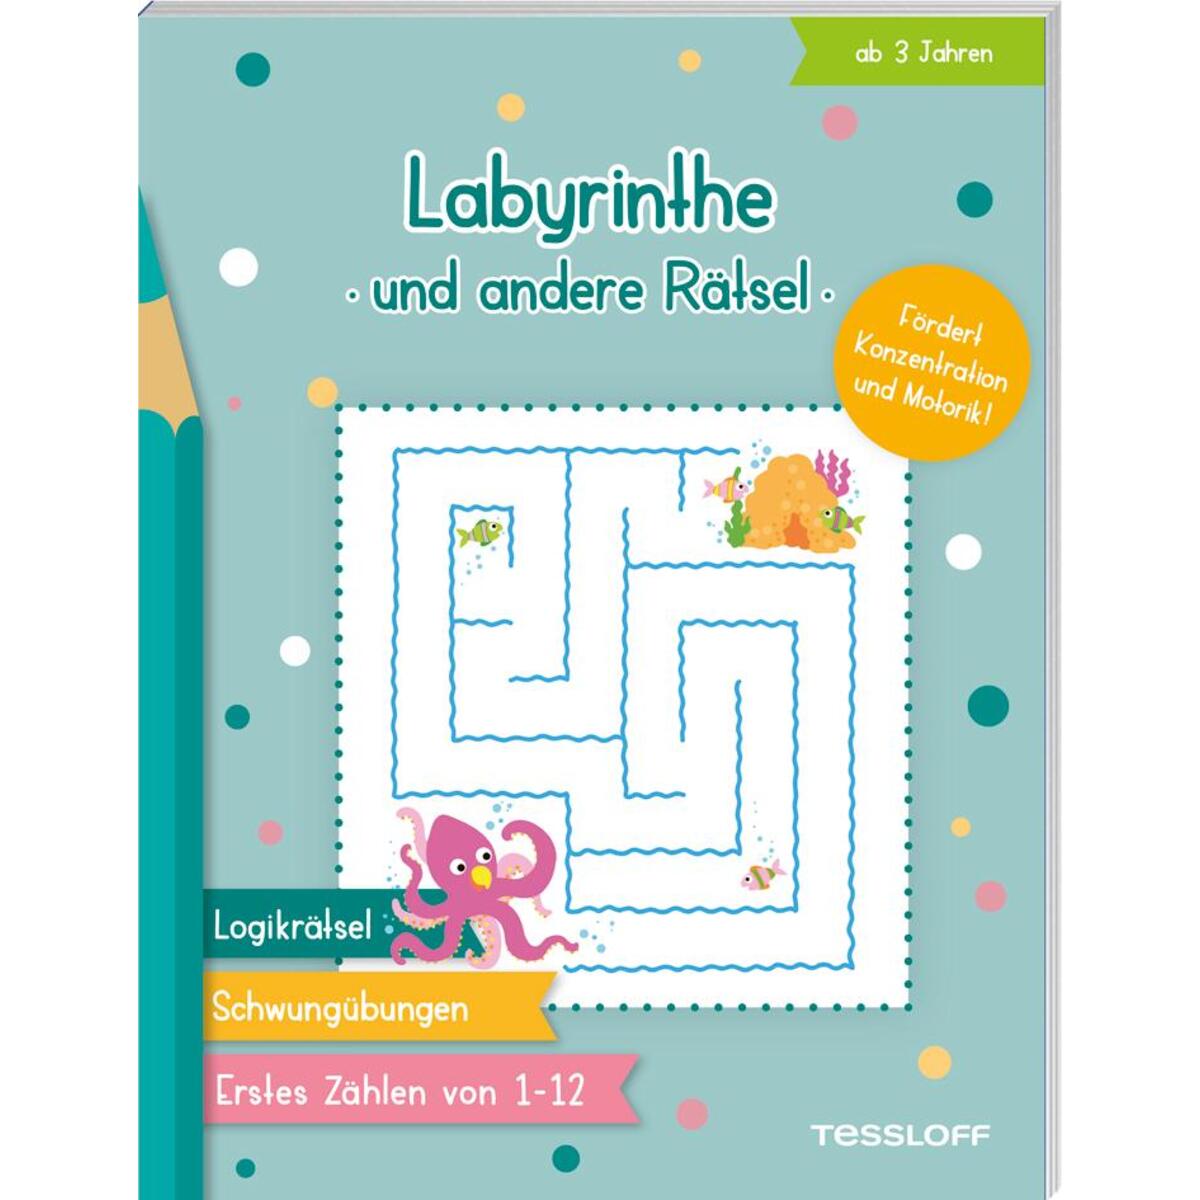 Labyrinthe und andere Rätsel von Tessloff Verlag